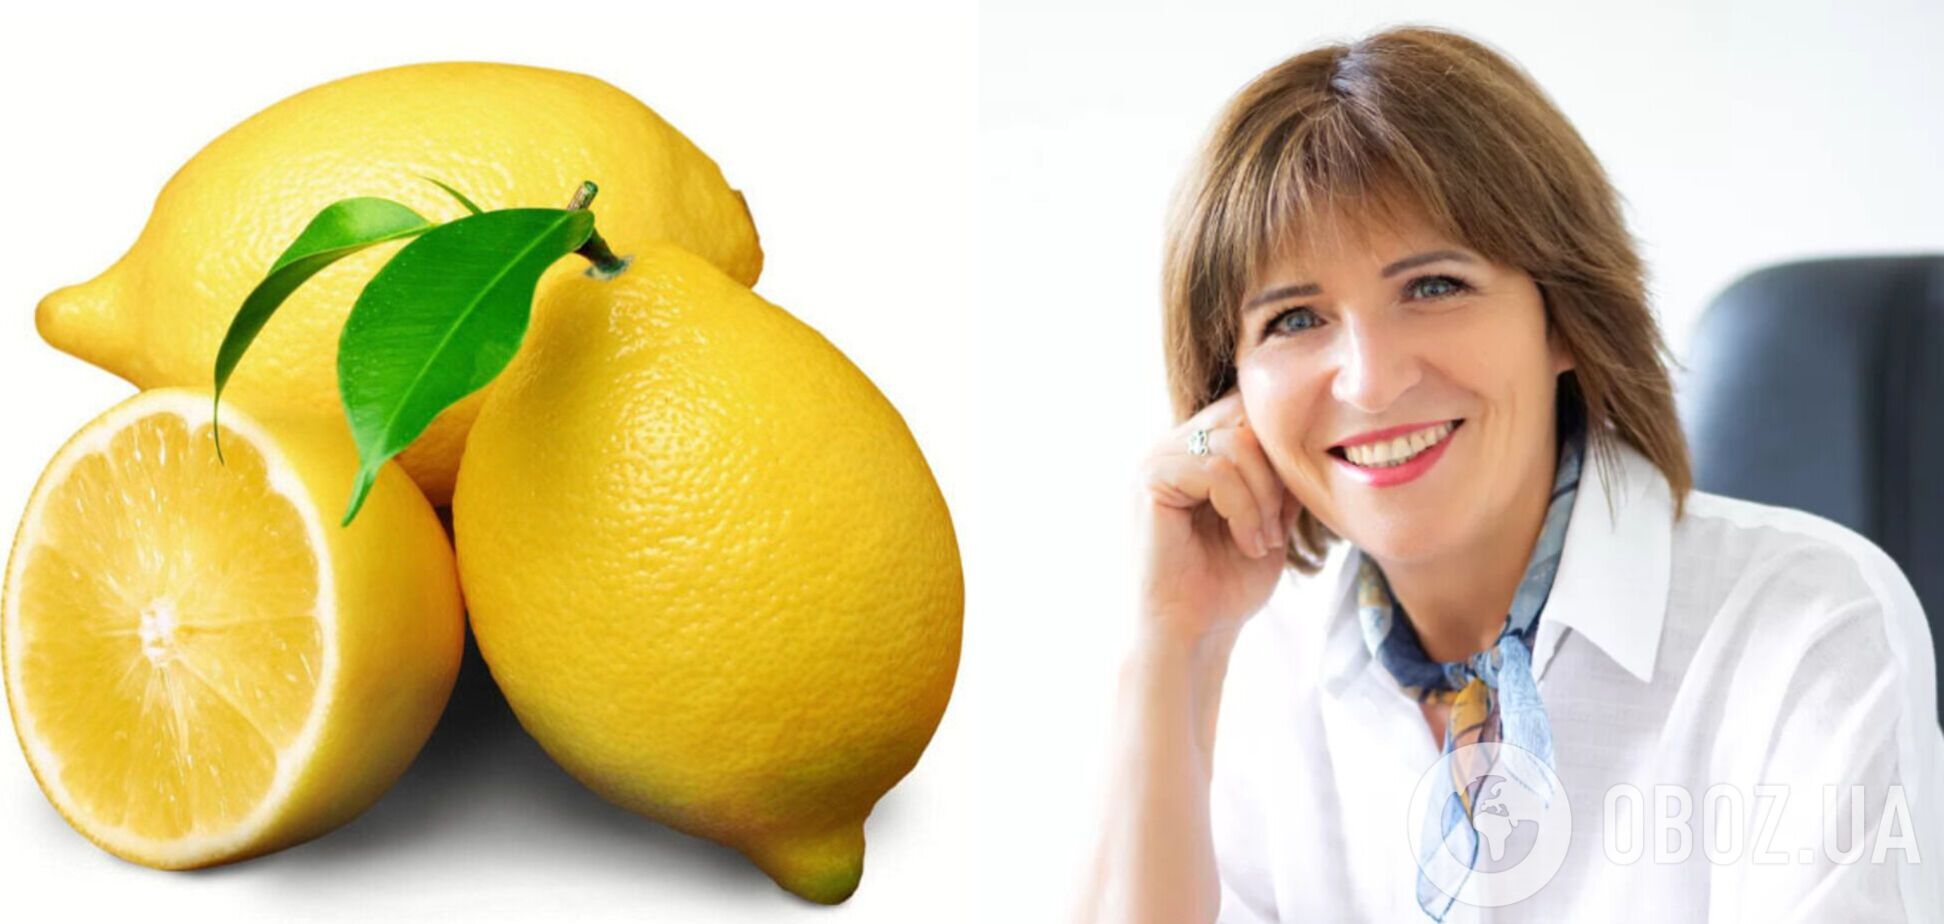 Скільки лимона можна їсти за день і наскільки він корисний: Світлана Фус розвіює міфи